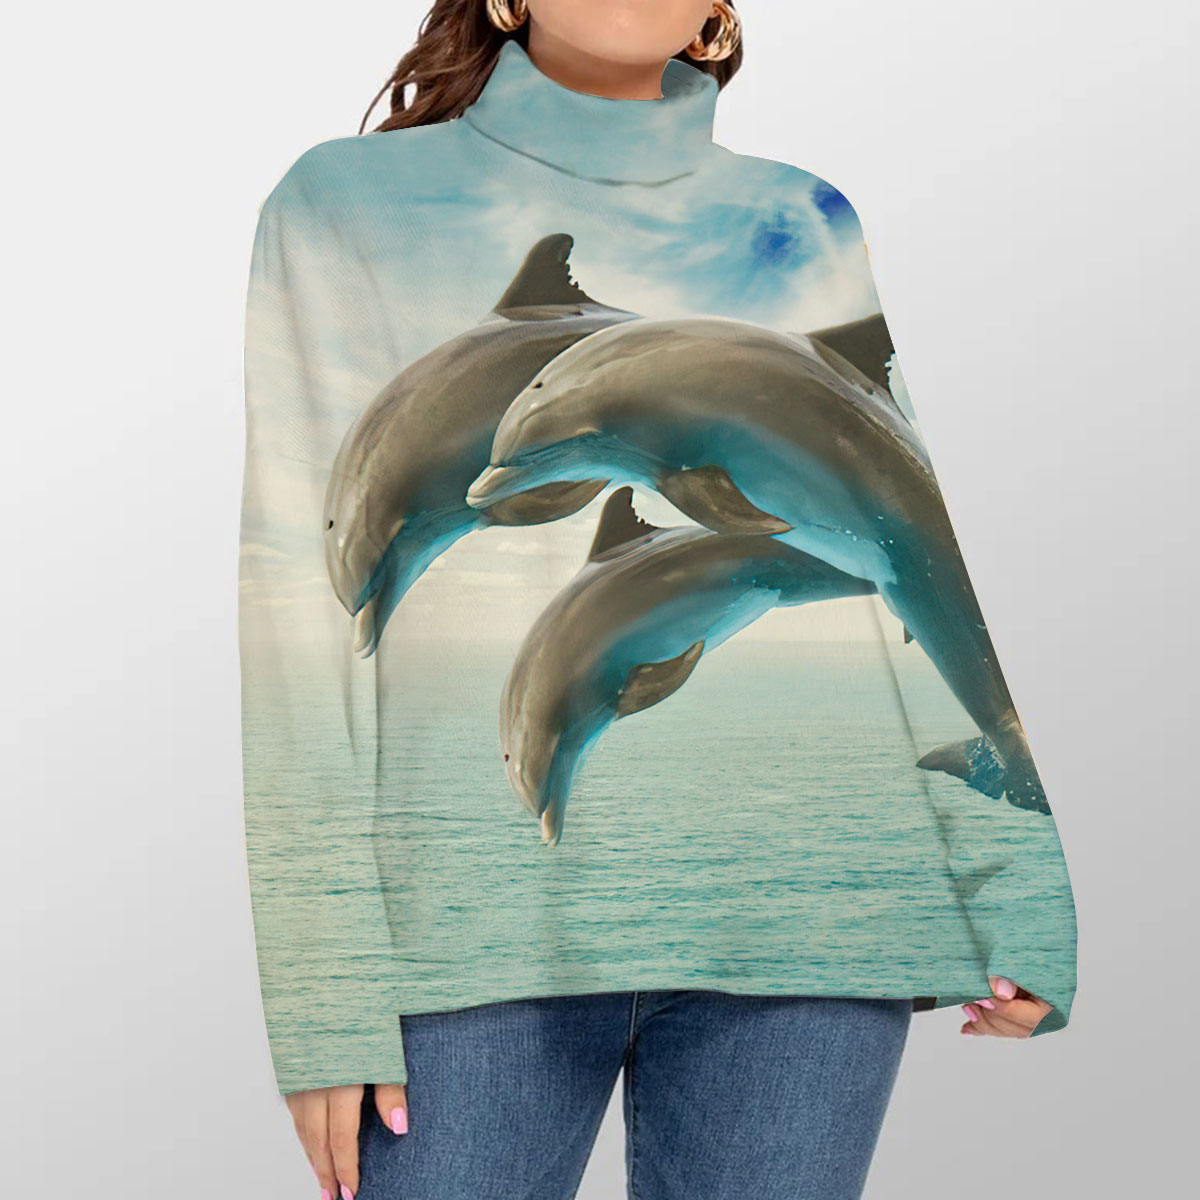 Seascape Dolphin Turtleneck Sweater